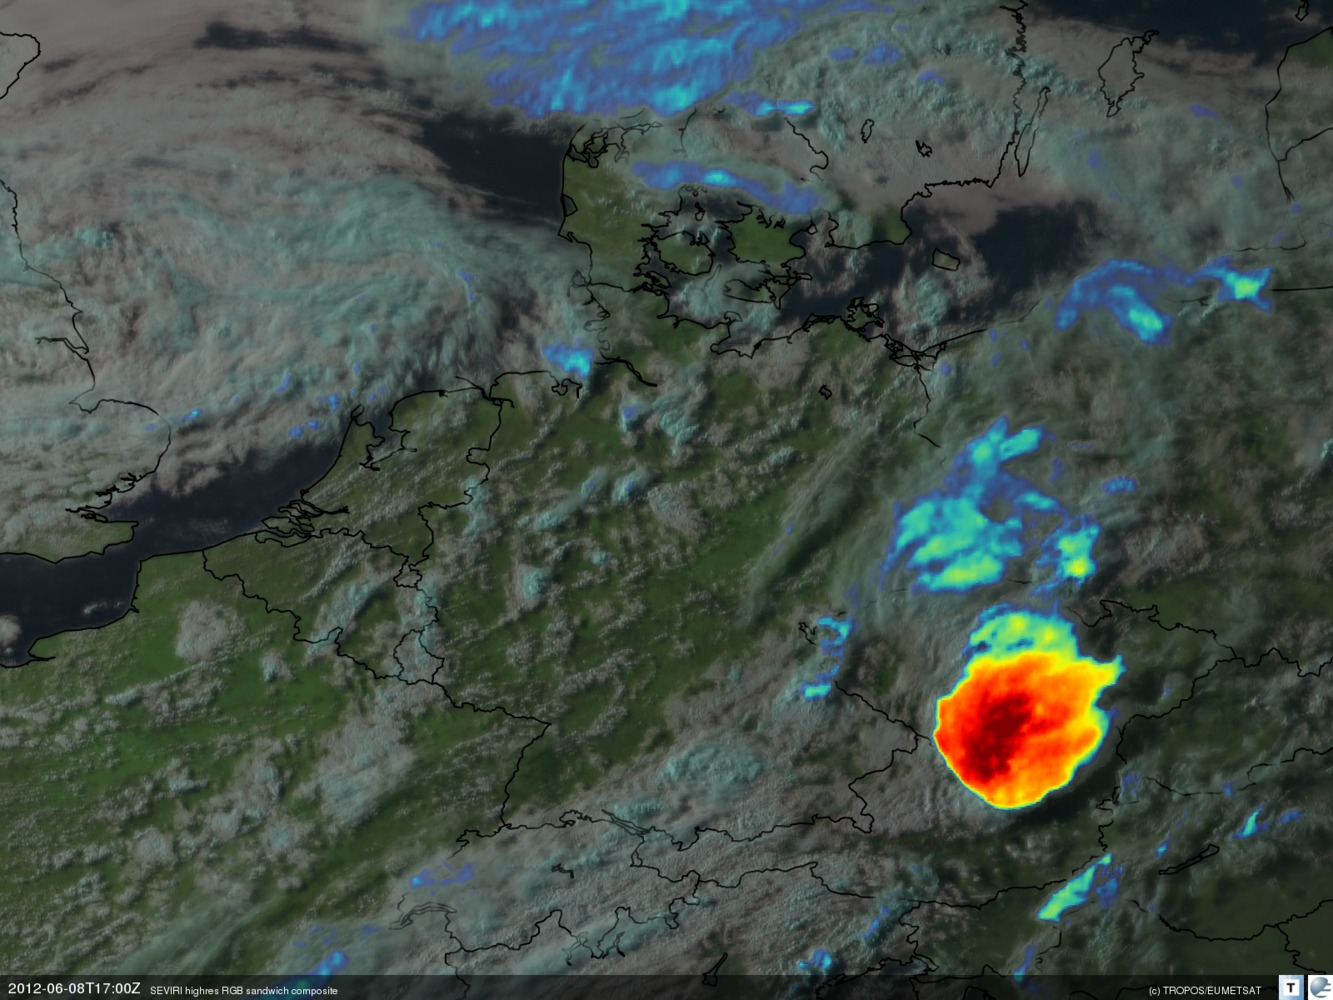 Meteosat-Aufnahme eines mächtigen mesoskaligen, konvektiven Systems über Tschechien und Österreich gegen Abend (19 Uhr lokale Sommerzeit am 08.06.2012). Quelle: TROPOS / EUMETSAT